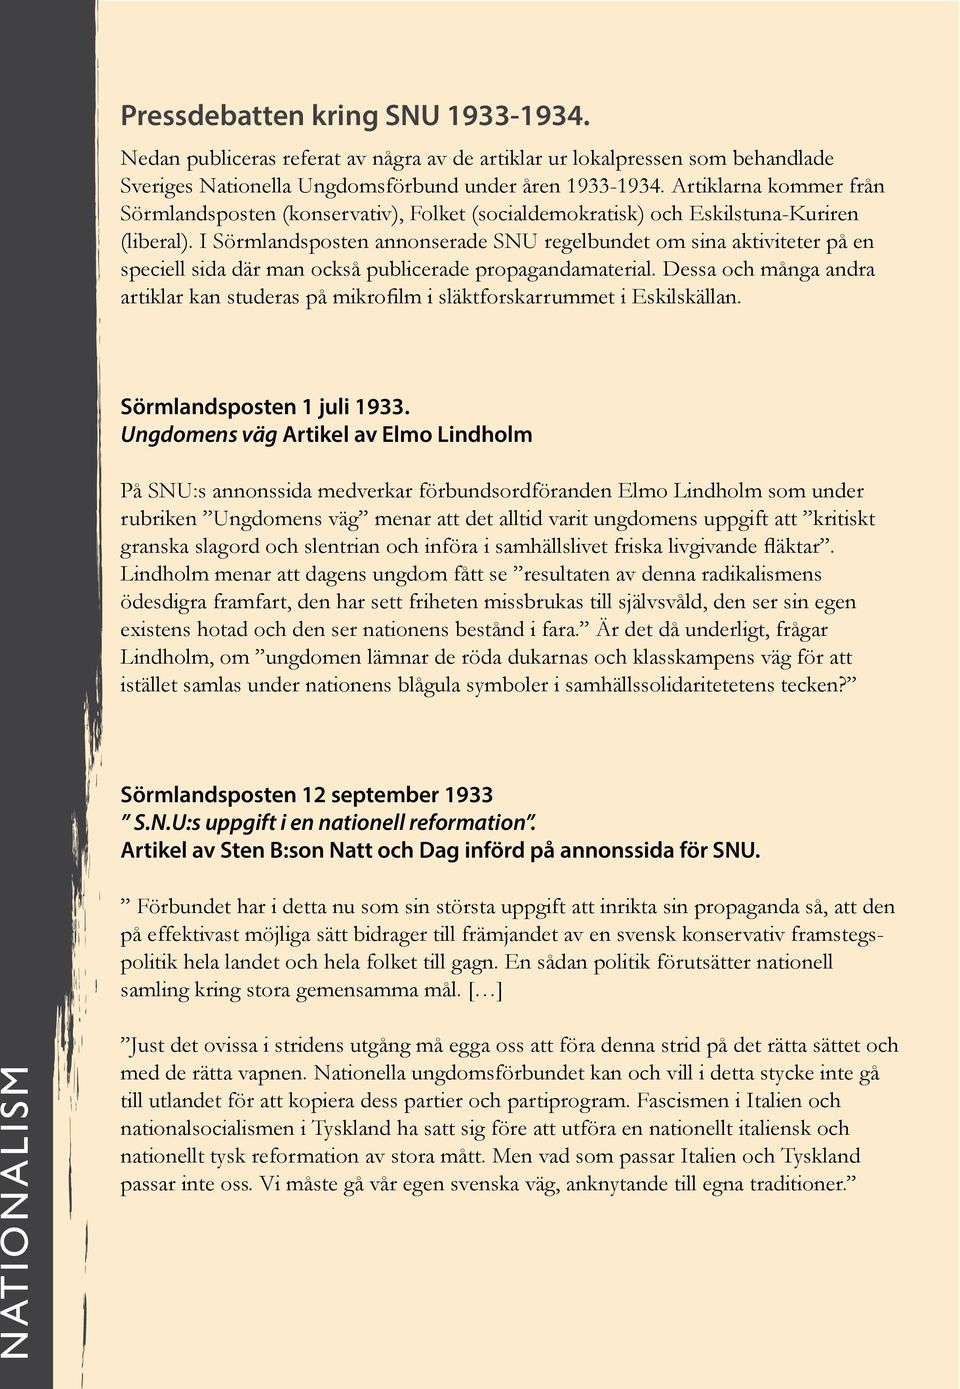 I Sörmlandsposten annonserade SNU regelbundet om sina aktiviteter på en speciell sida där man också publicerade propagandamaterial.